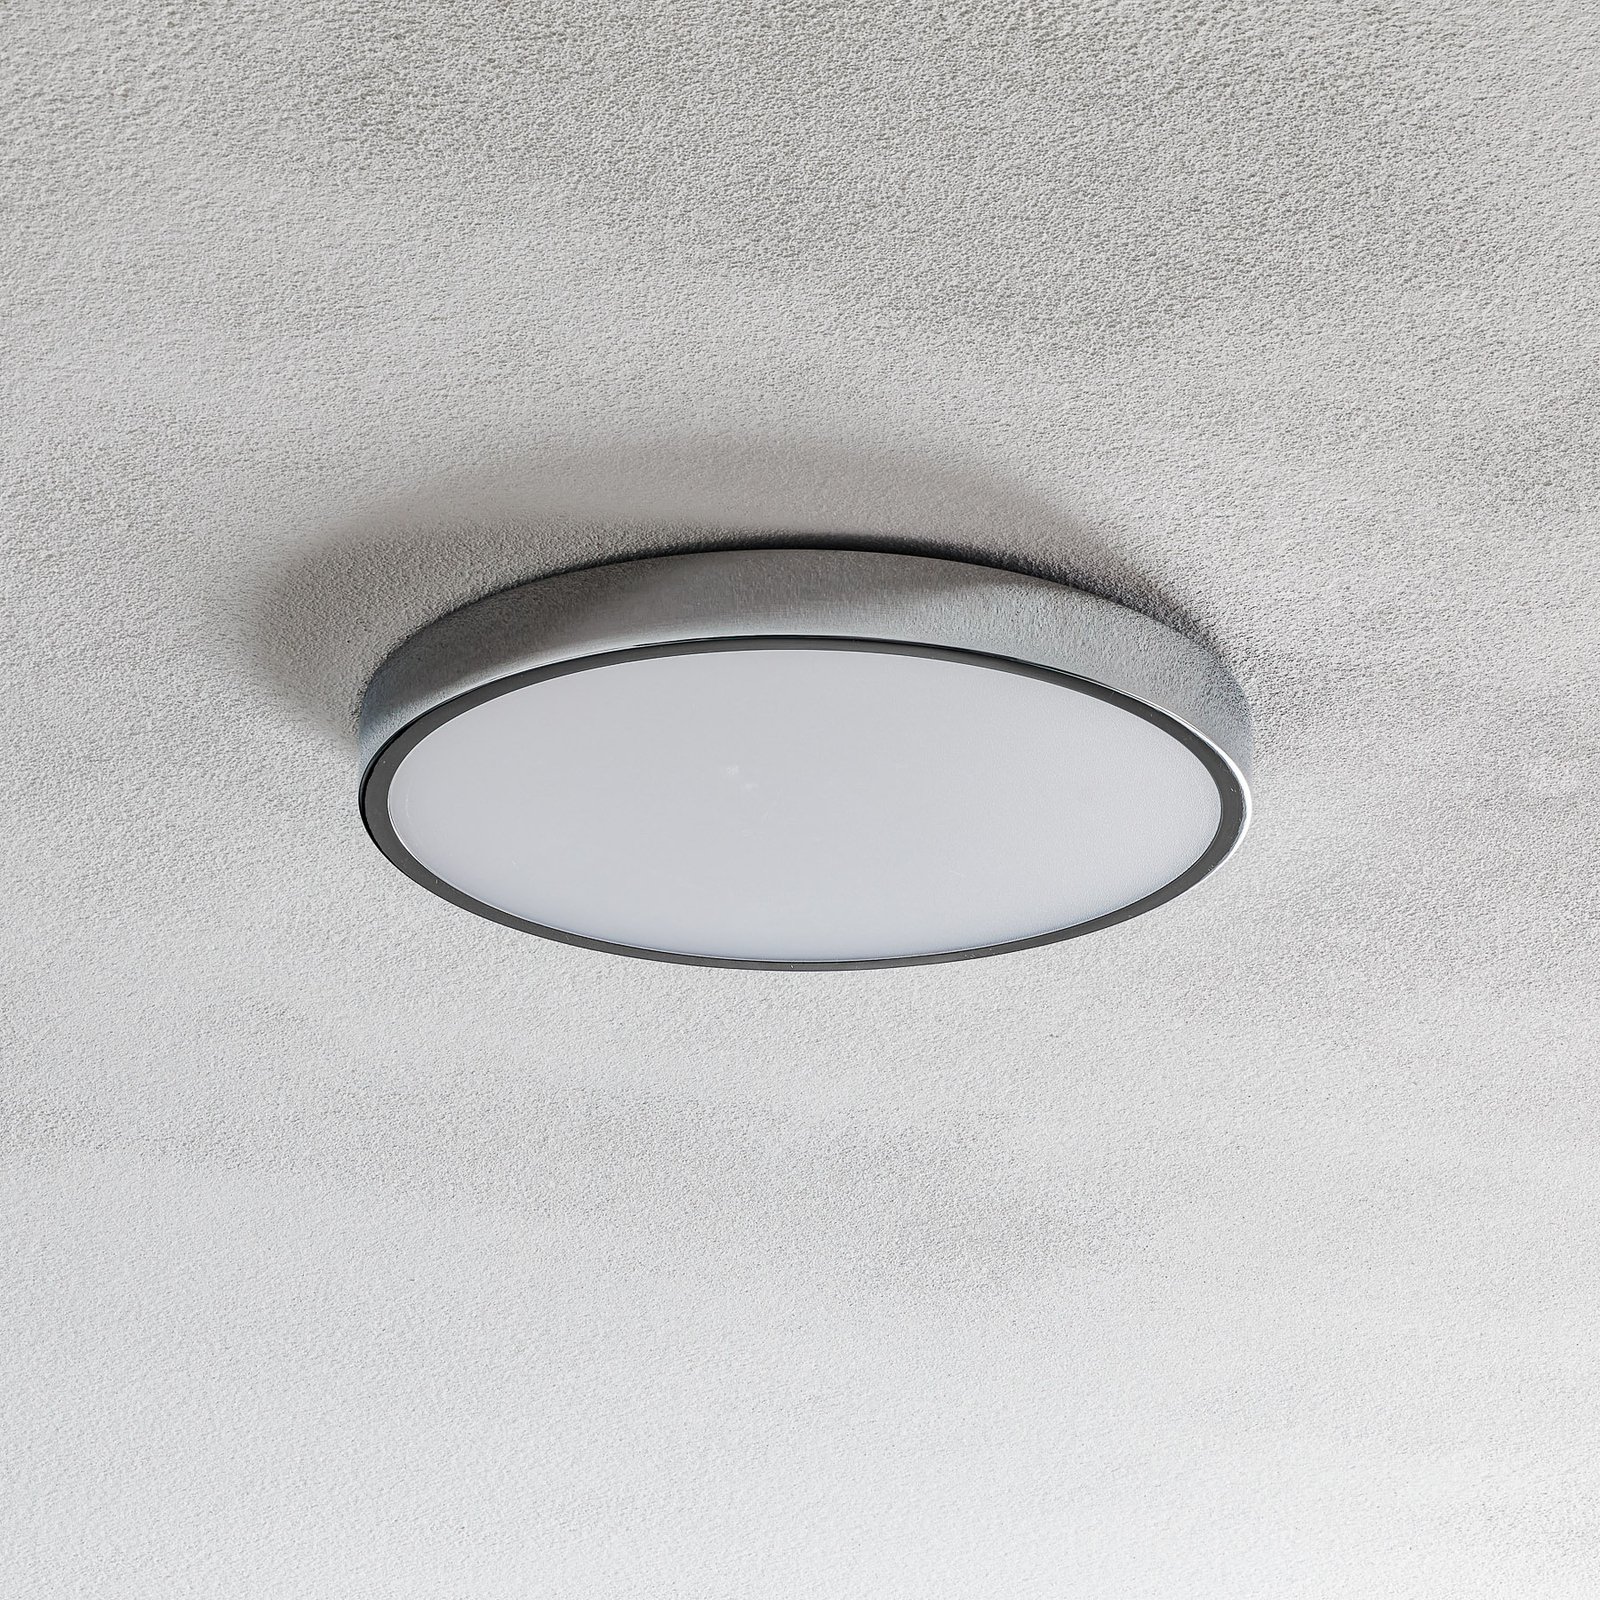 LED ceiling light Bully, chrome, Ø 24 cm